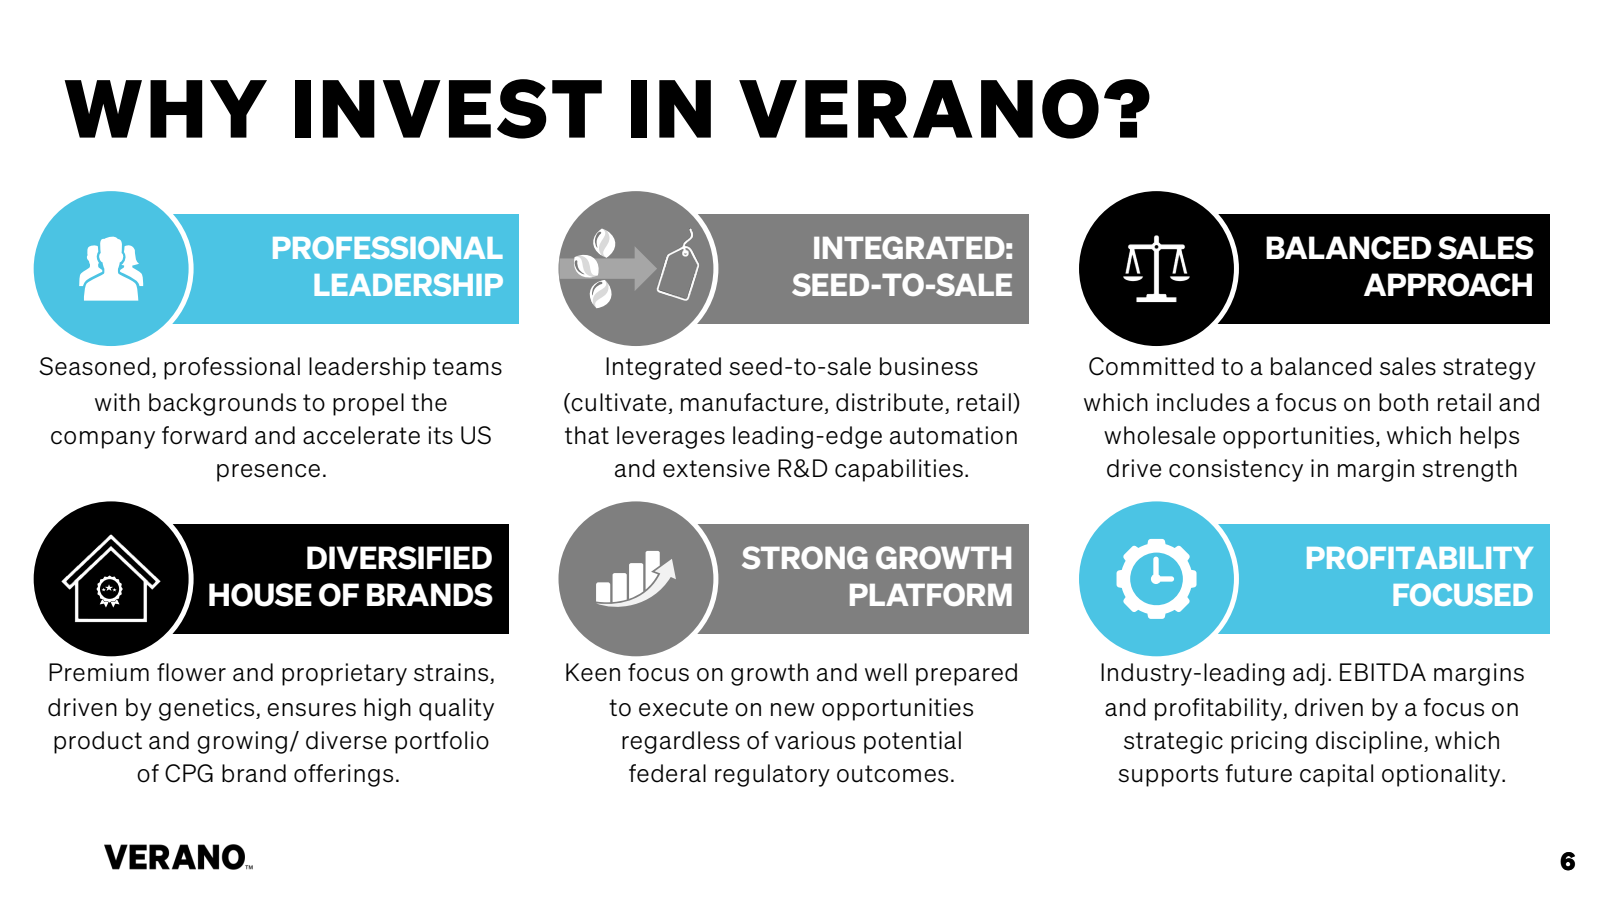 WHY INVEST IN VERANO